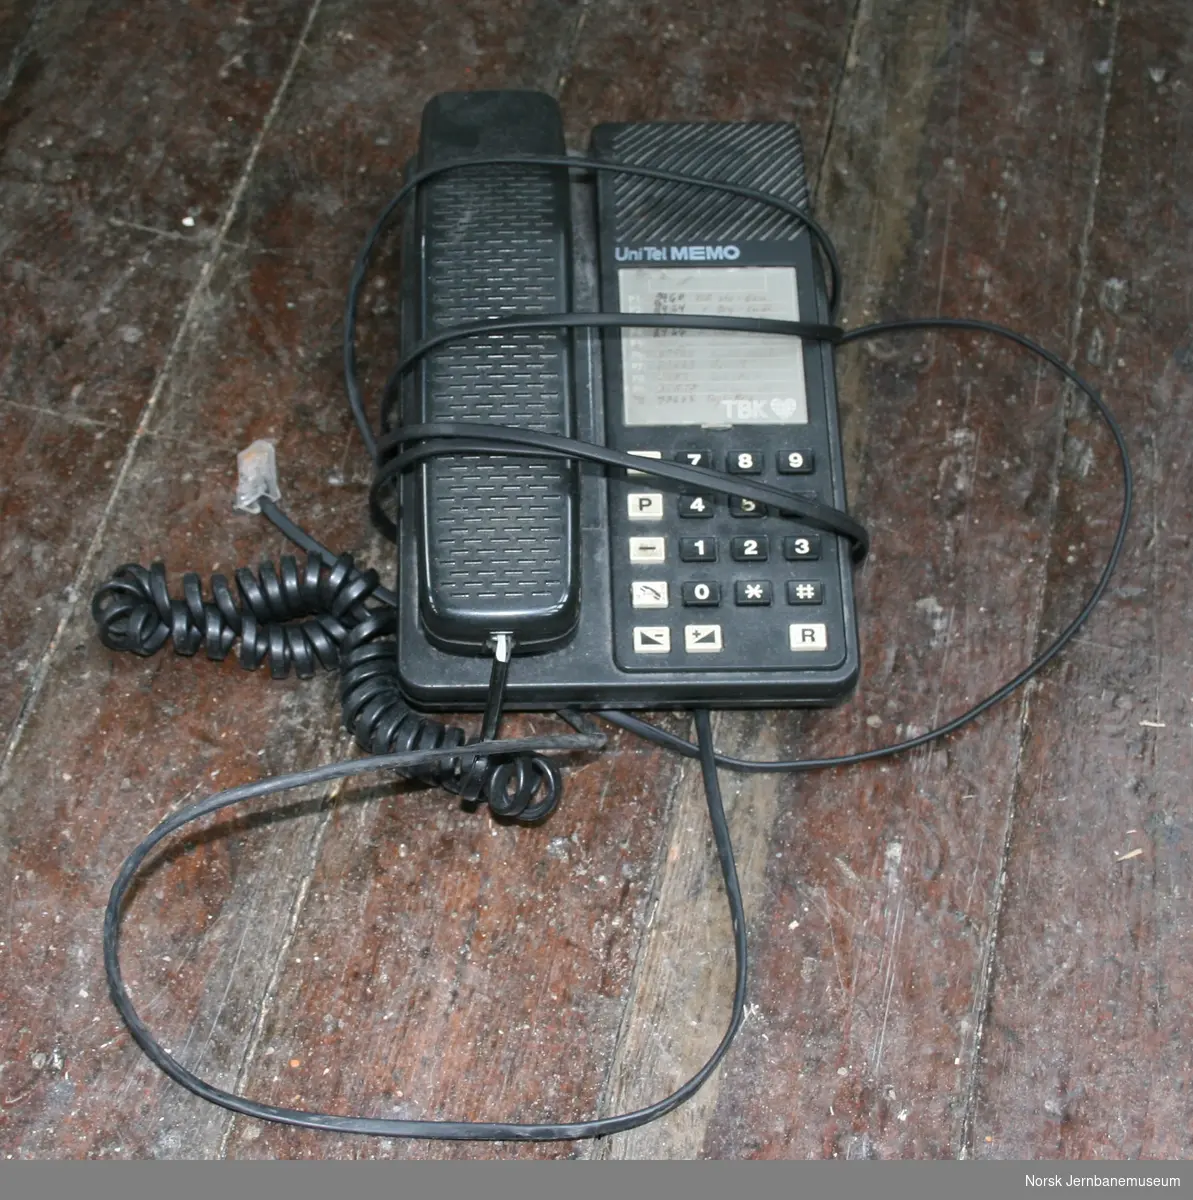 Modell Unitel Memo
art. DB AR 201001/196
produsert 25/90

Brukt som toglederapparat for blokktelefon